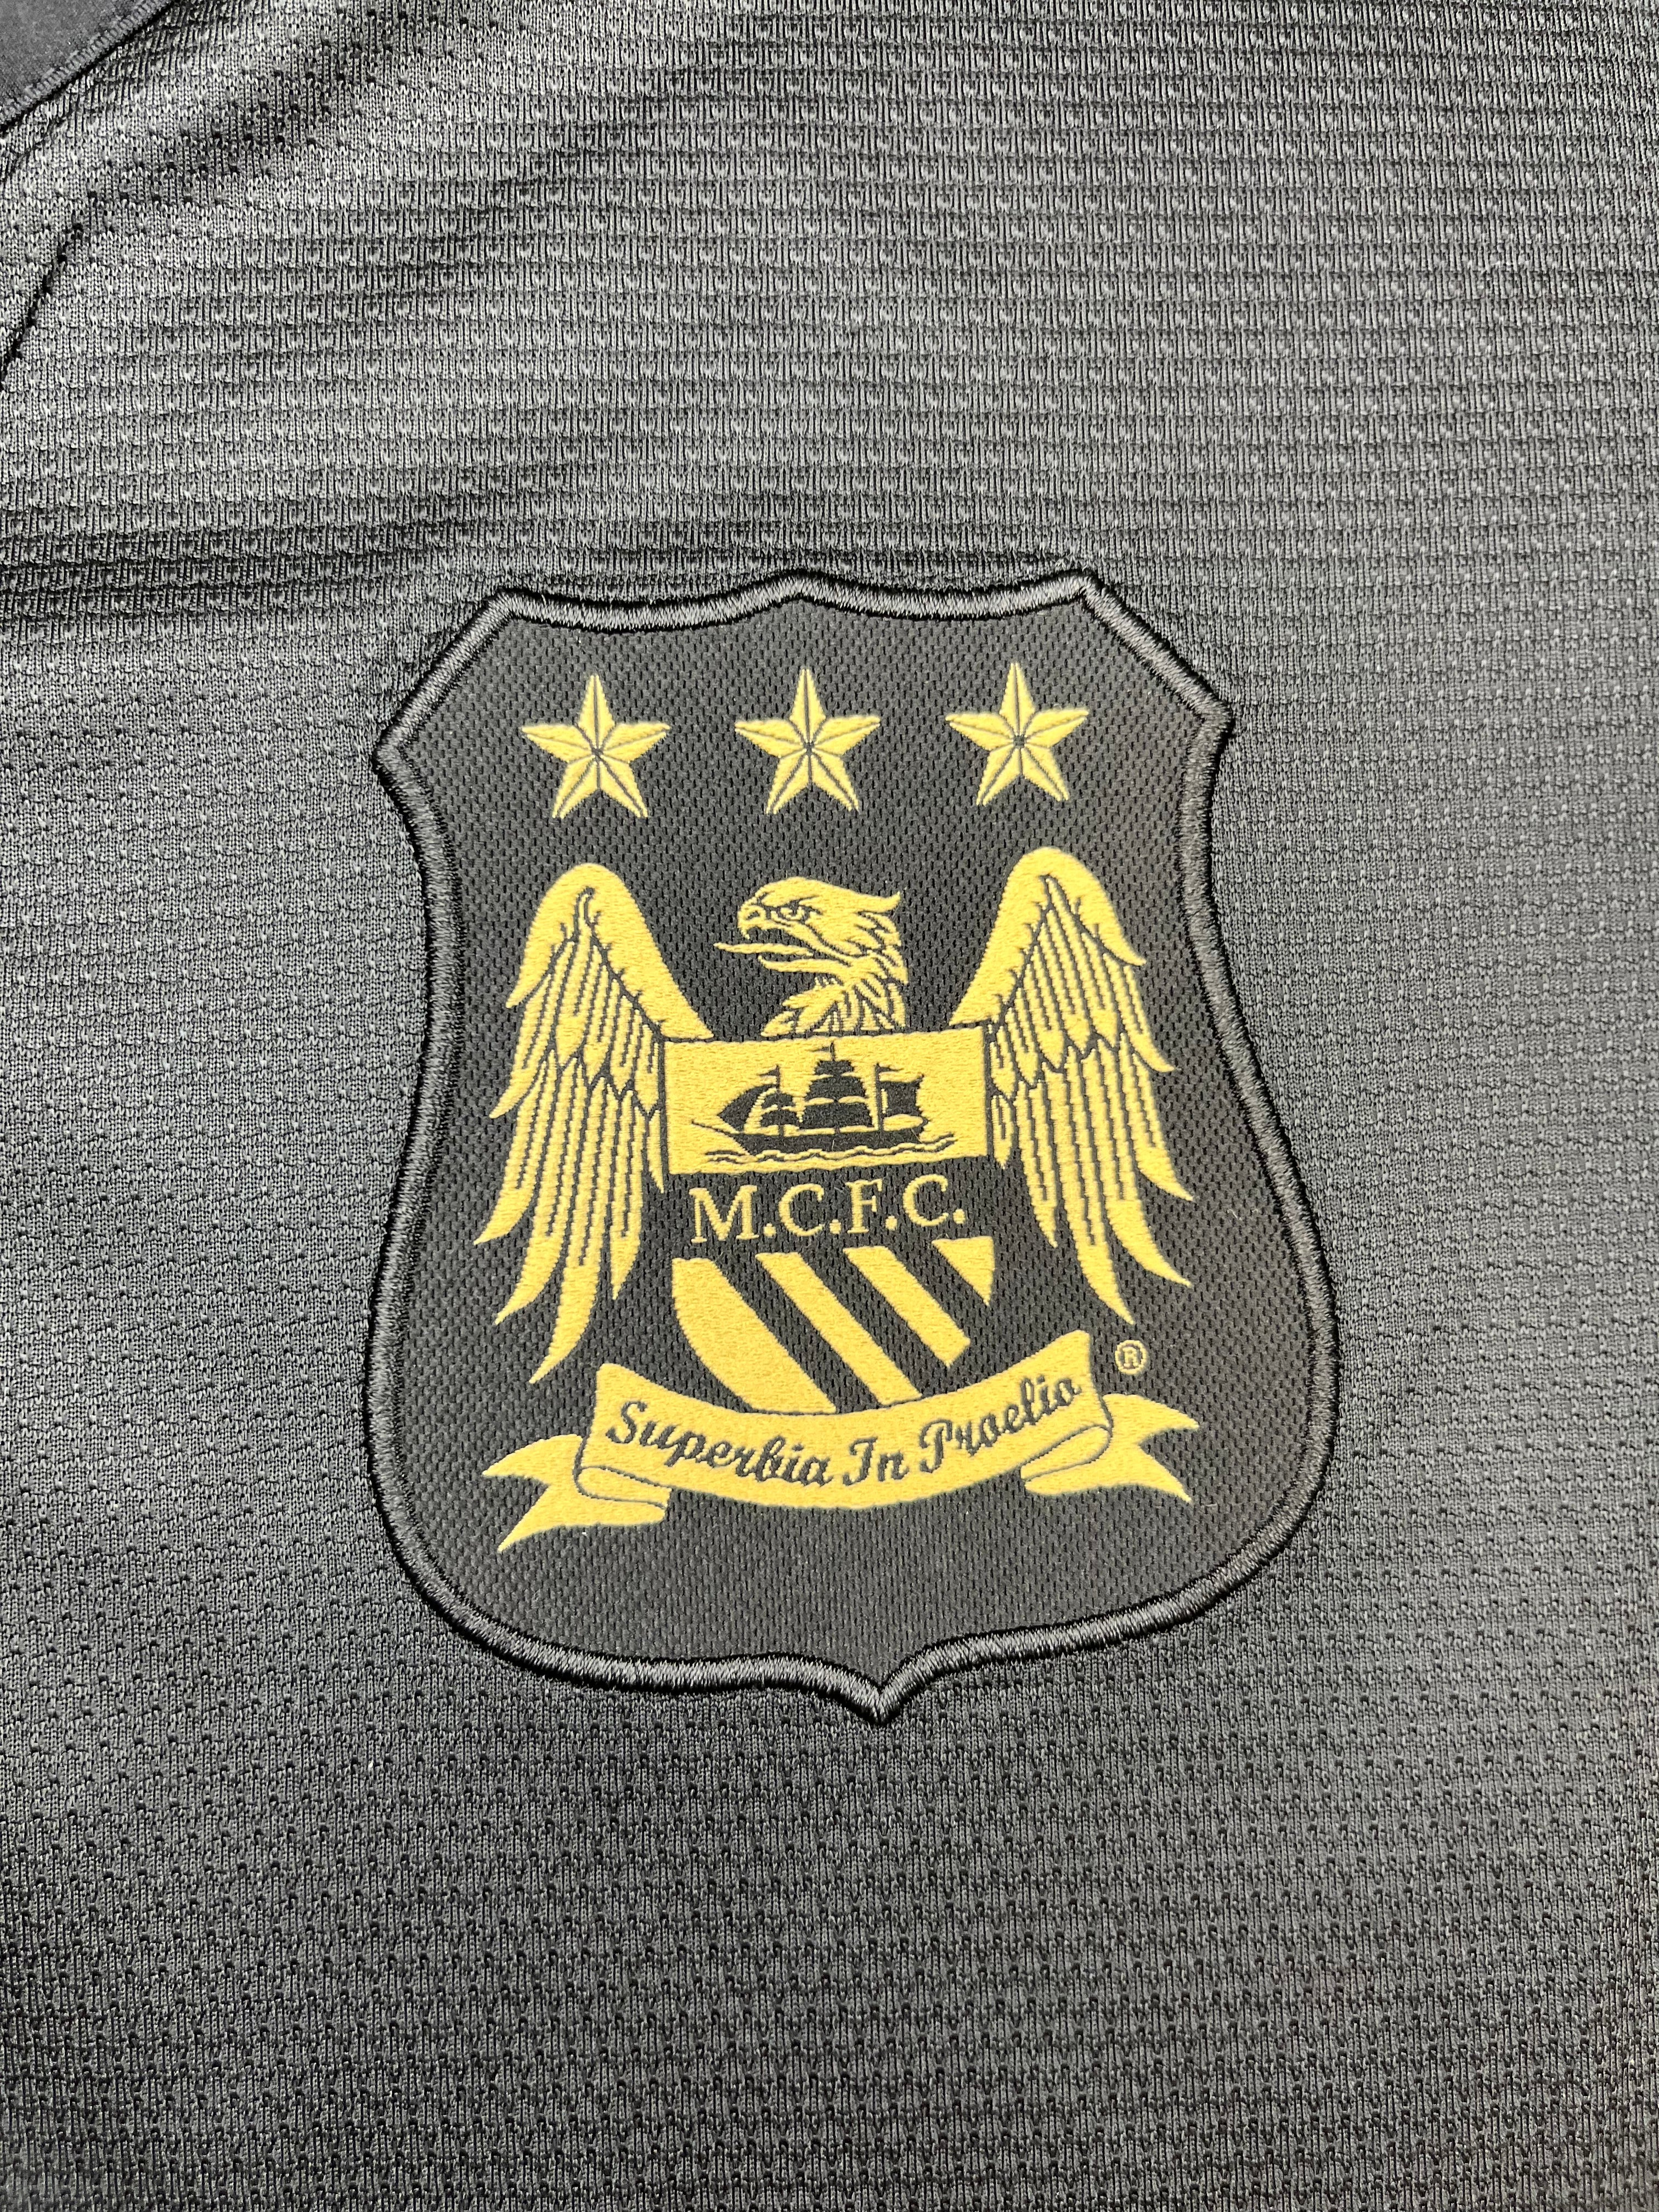 2013/14 Manchester City Away Shirt (XXL) 9/10